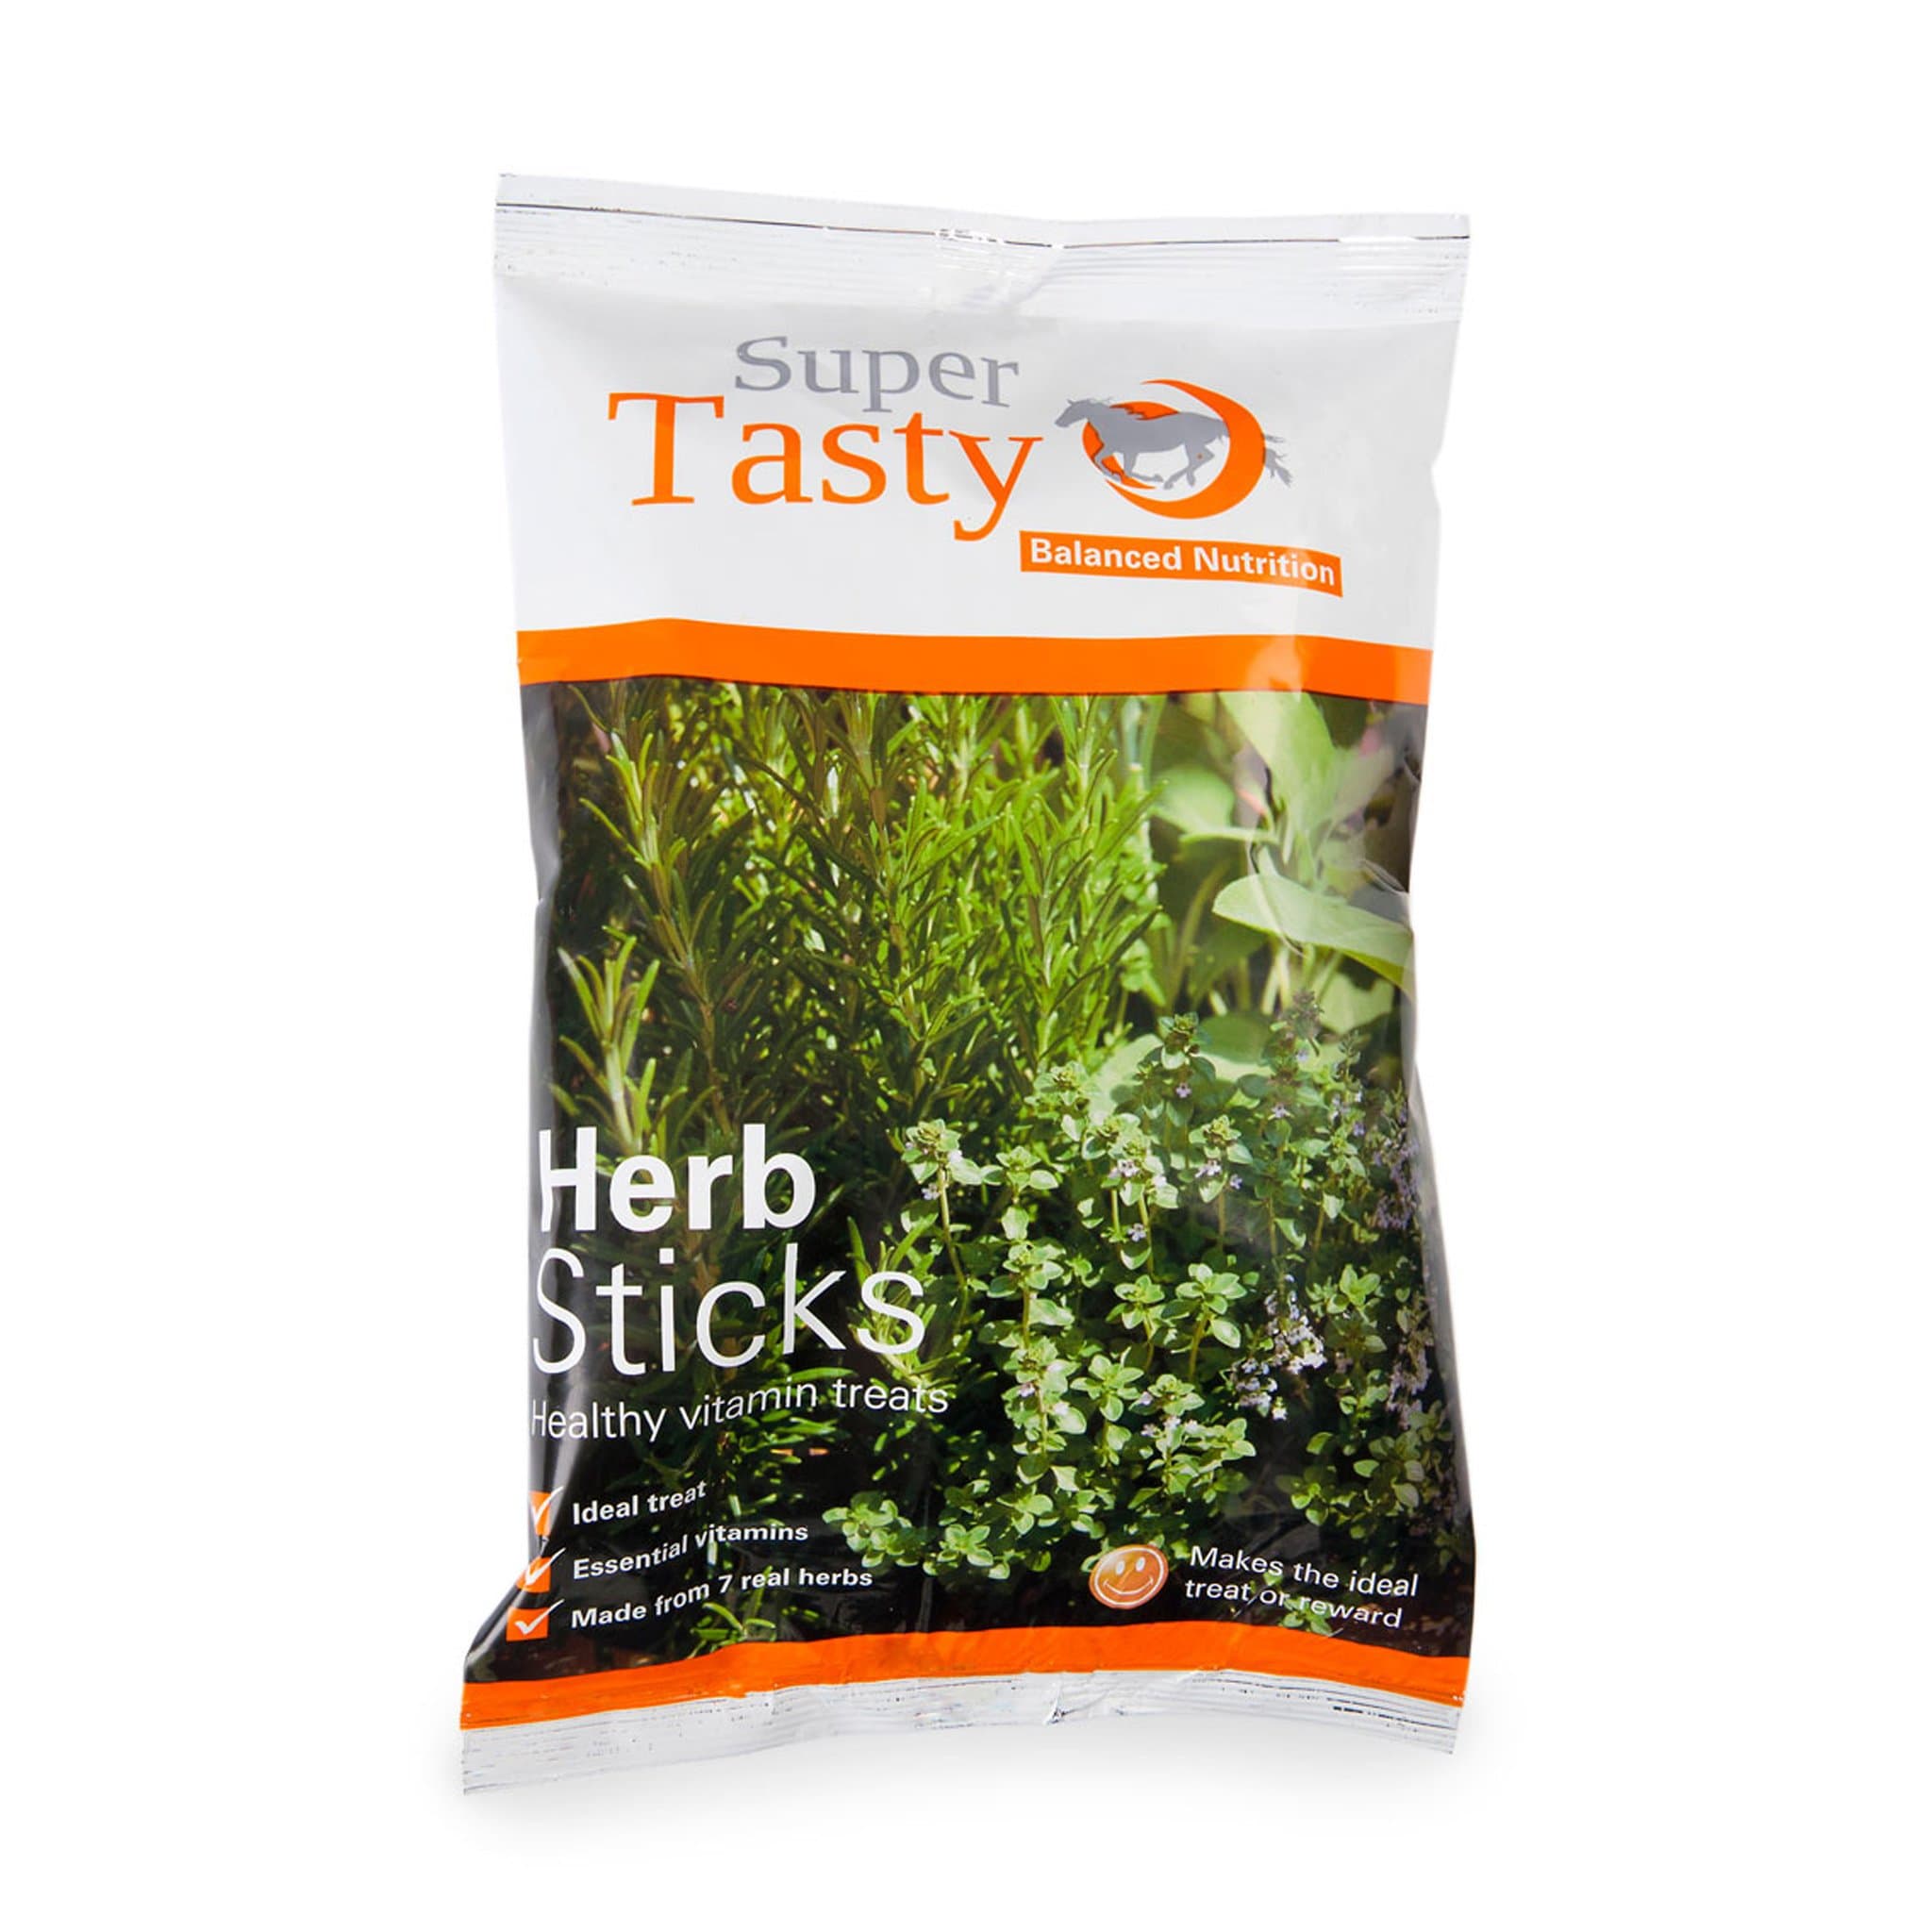 Super Tasty Herb Sticks